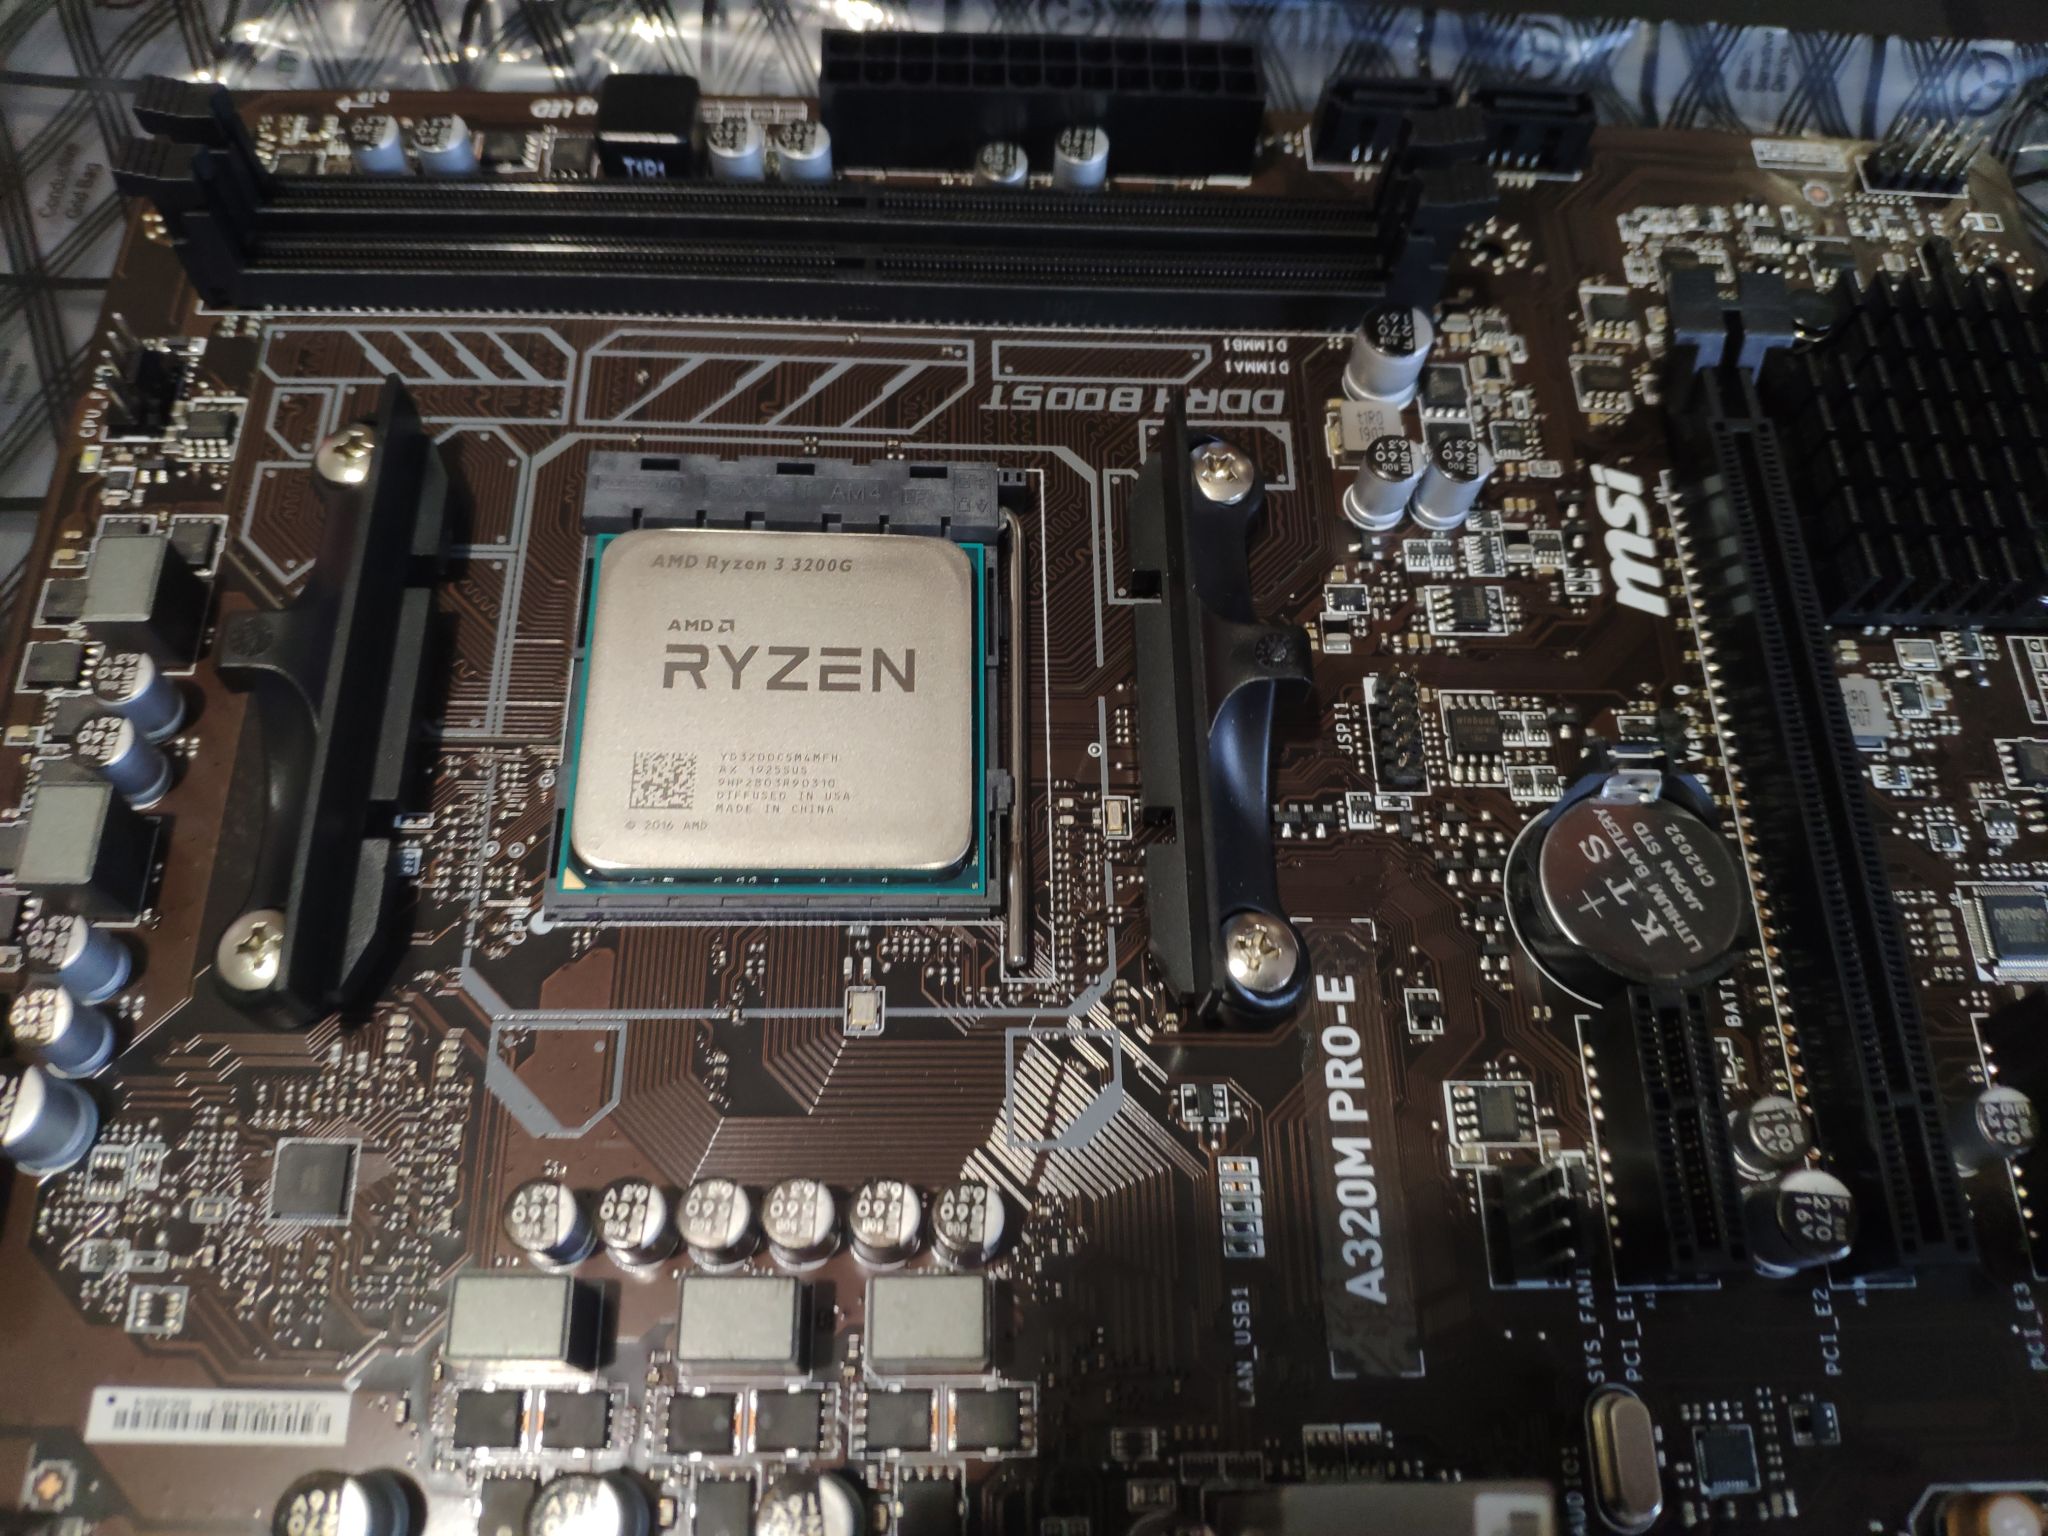 5 5600 сокет. Ryzen 3 3200g. Процессор AMD Ryzen 3 3200g. Процессор AMD Ryzen 3 3200g am4. AMD Ryzen 3 Pro 3200g.